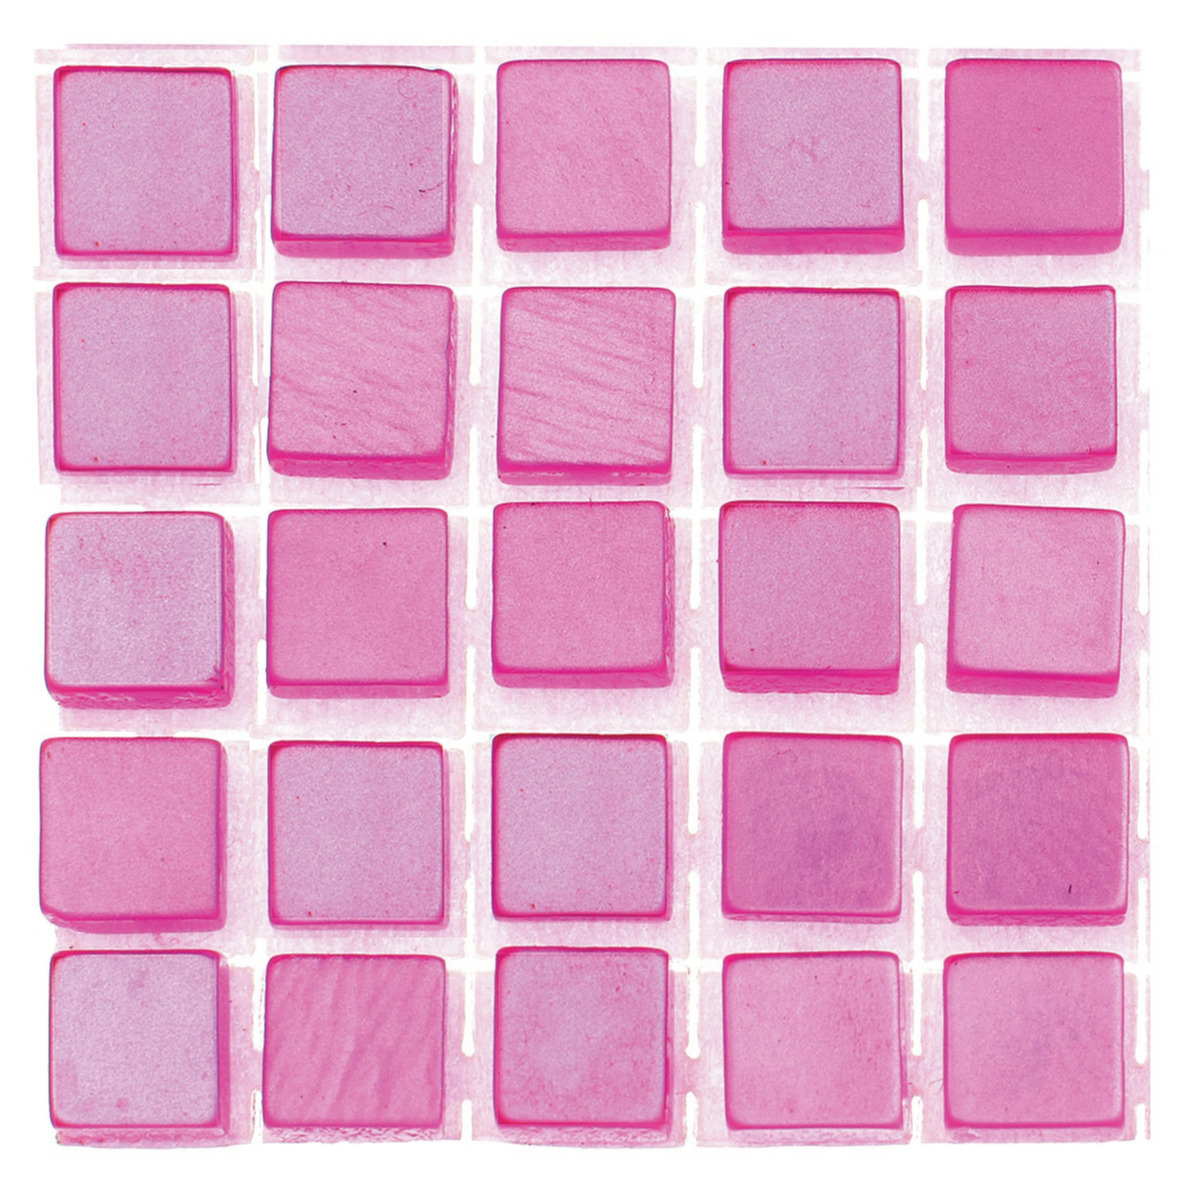 714x stuks mozaieken maken steentjes/tegels kleur roze 5 x 5 x 2 mm -